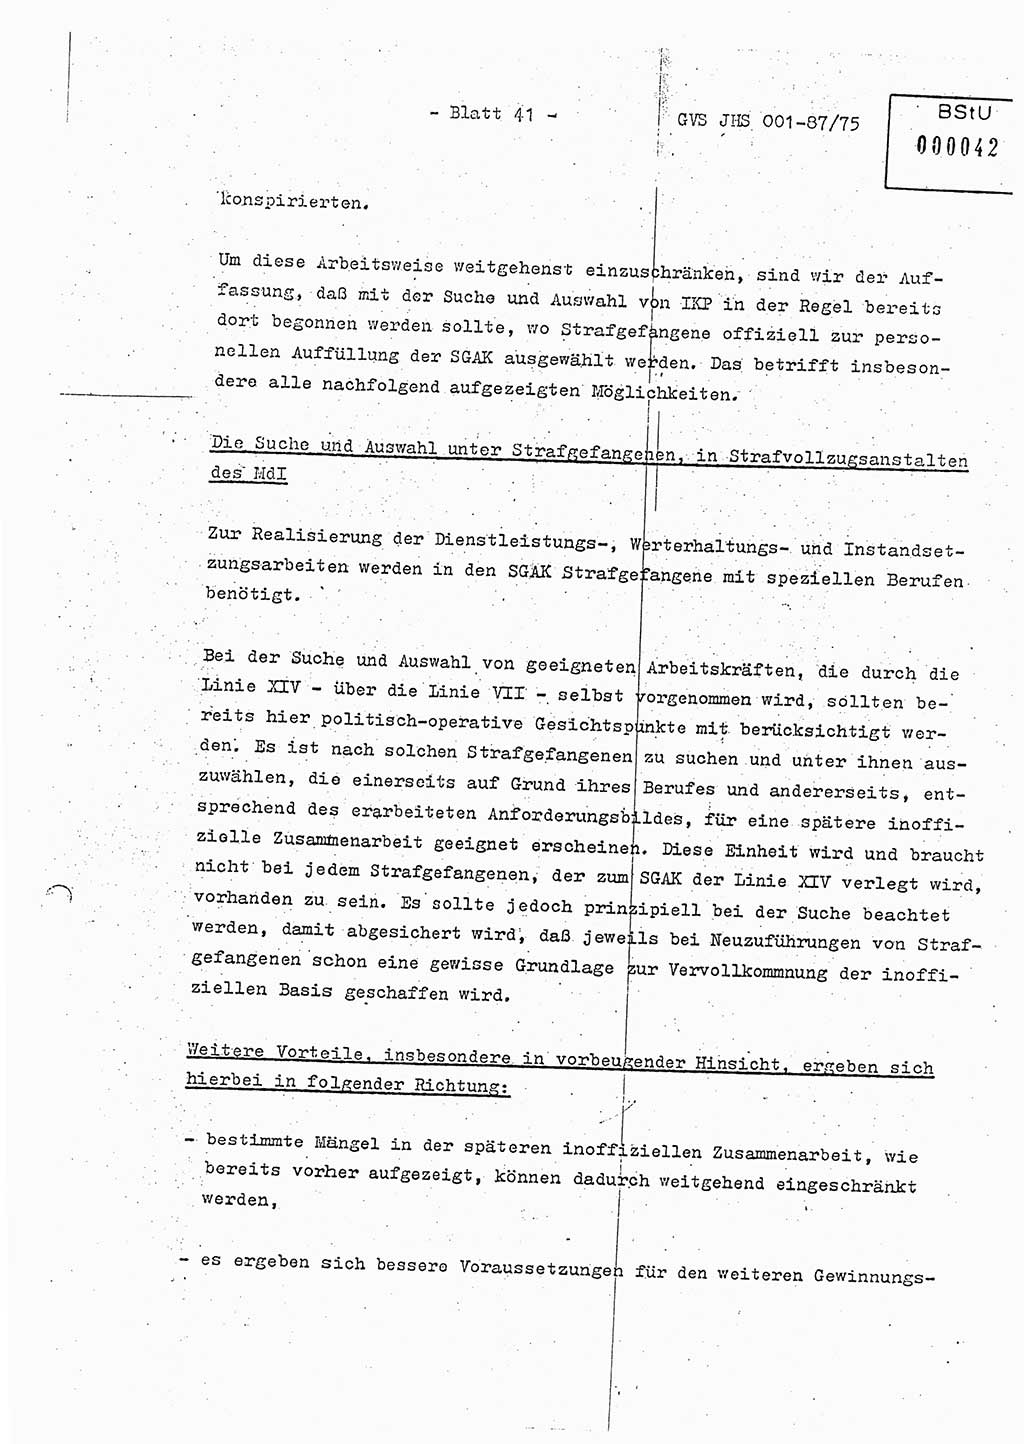 Diplomarbeit Hauptmann Volkmar Heinz (Abt. ⅩⅣ), Oberleutnant Lothar Rüdiger (BV Lpz. Abt. Ⅺ), Ministerium für Staatssicherheit (MfS) [Deutsche Demokratische Republik (DDR)], Juristische Hochschule (JHS), Geheime Verschlußsache (GVS) o001-87/75, Potsdam 1975, Seite 41 (Dipl.-Arb. MfS DDR JHS GVS o001-87/75 1975, S. 41)